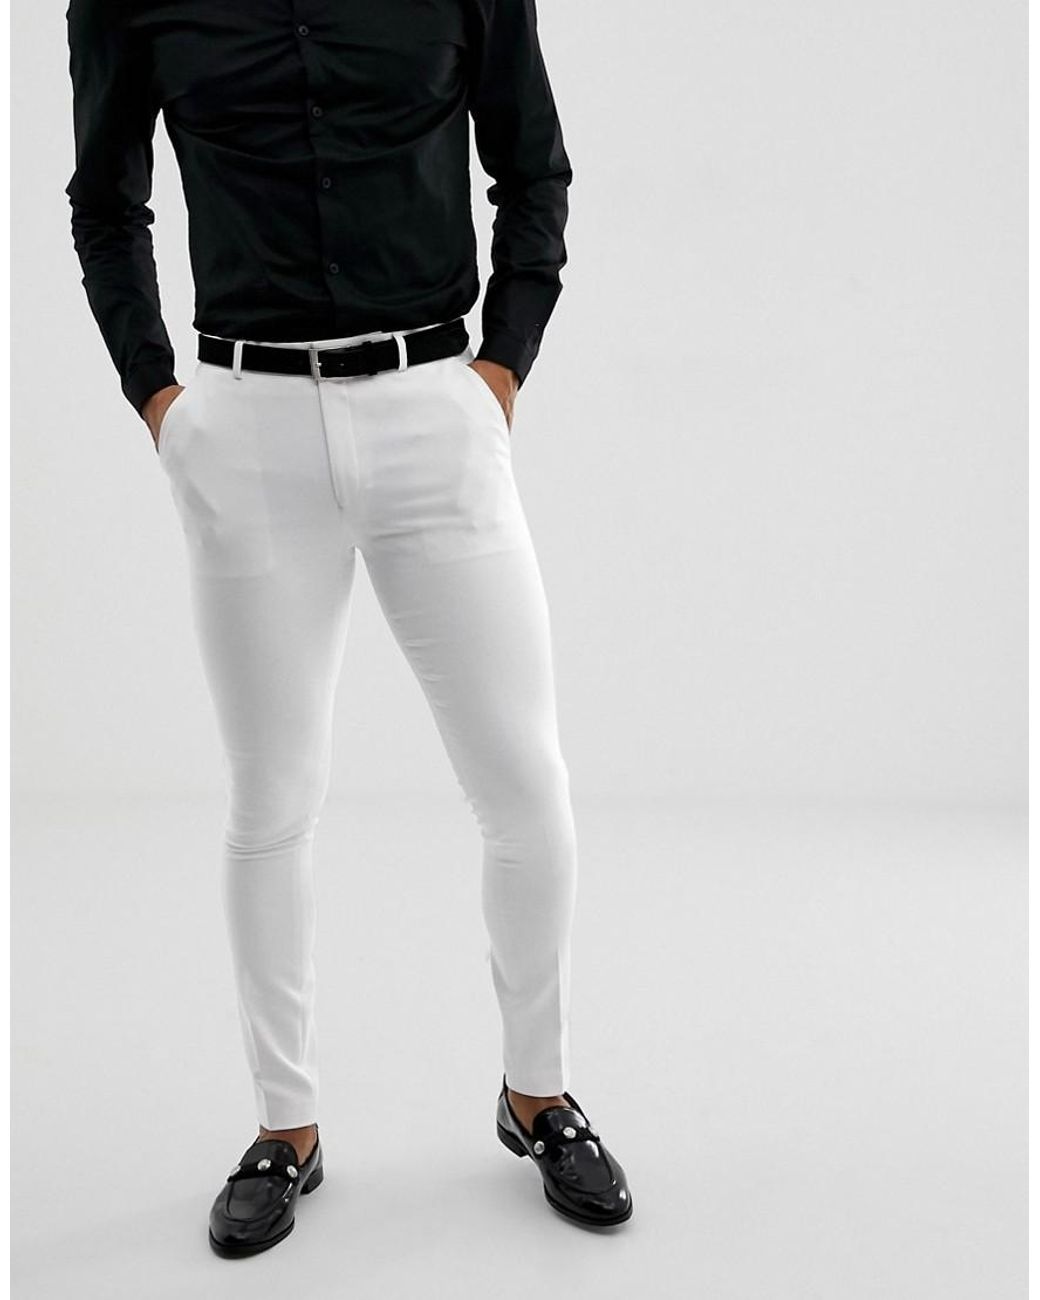 Мужские черно белые штаны. Брюки резервед мужские белые. Белые брюки мужские. Белые штаны мужские. Мужскиебрюки в обтяжечку.